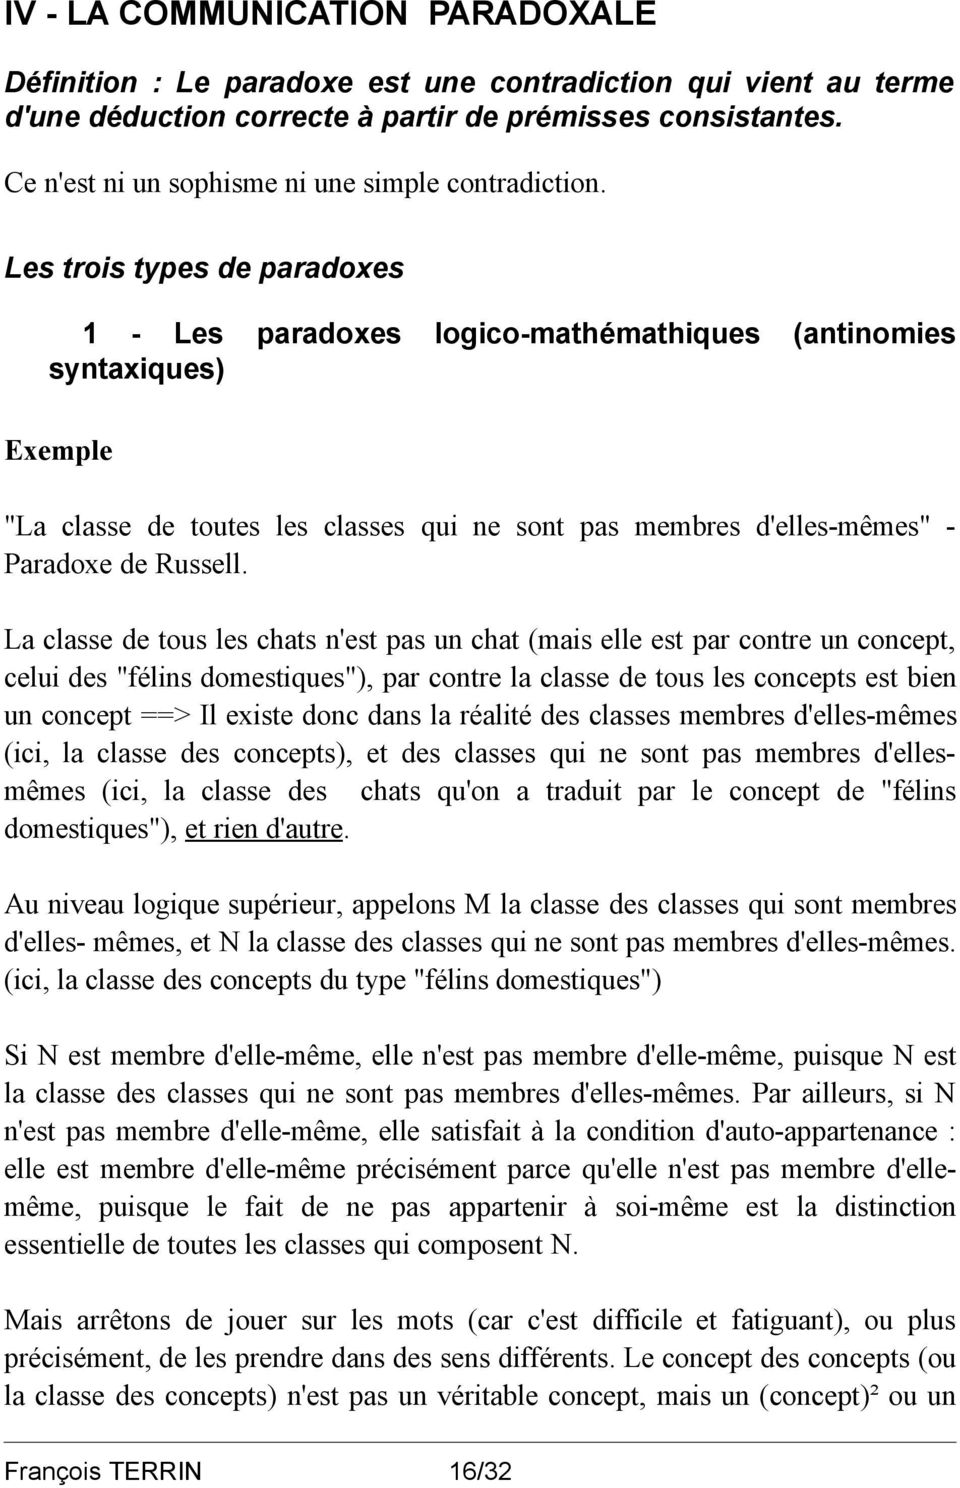 Les trois types de paradoxes 1 - Les paradoxes logico-mathémathiques (antinomies syntaxiques) Exemple "La classe de toutes les classes qui ne sont pas membres d'elles-mêmes" - Paradoxe de Russell.